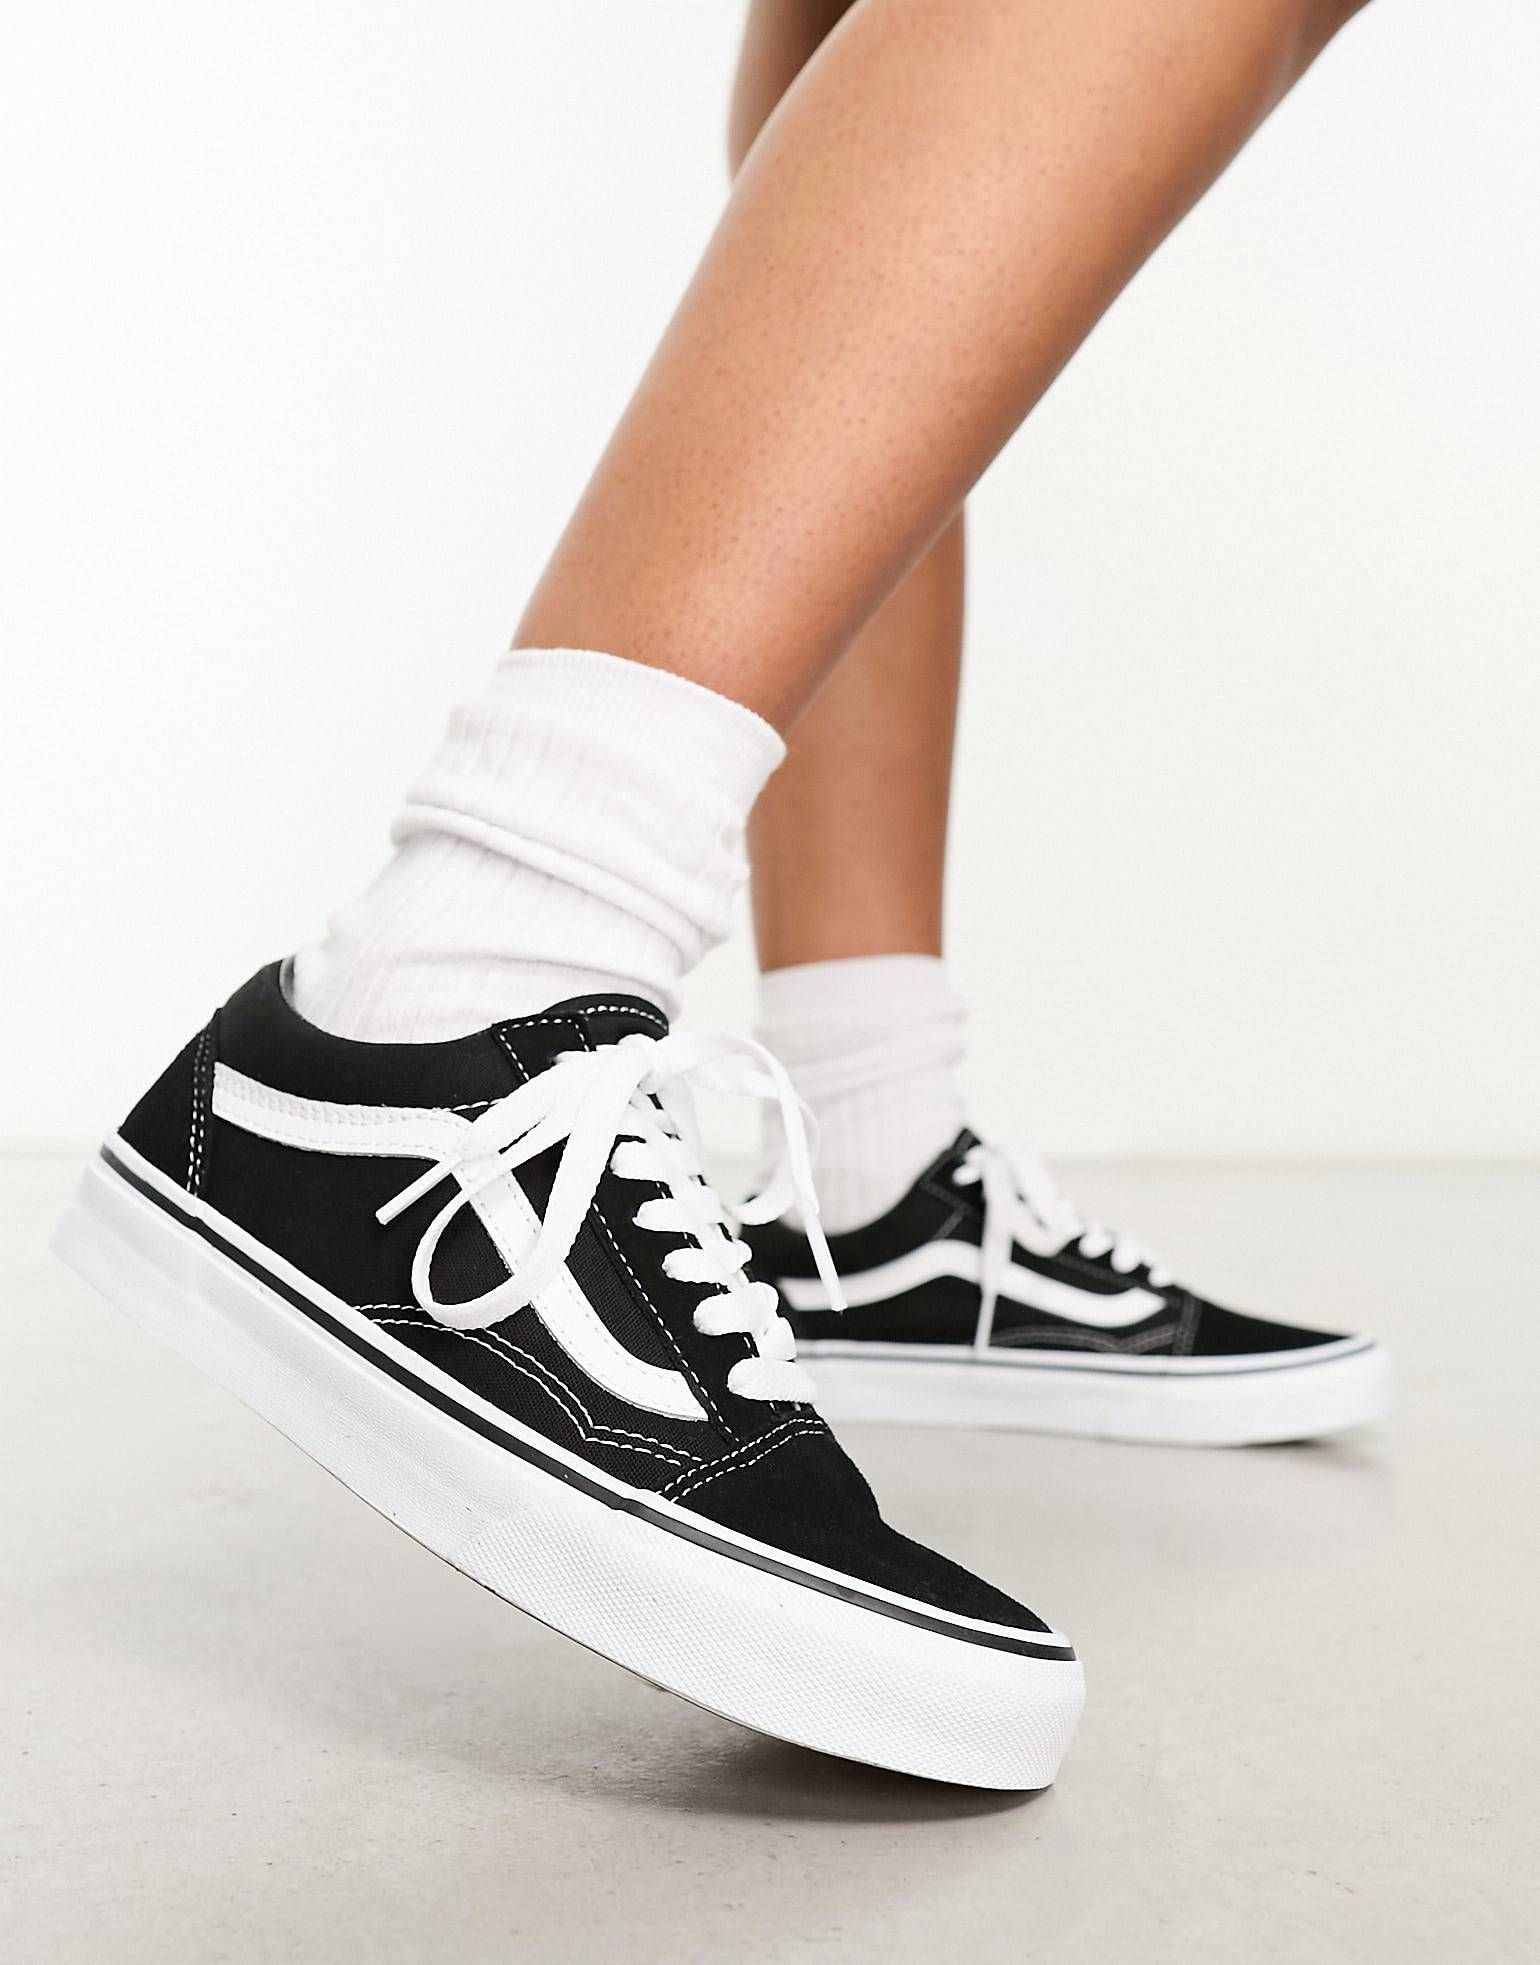 Vans Old Skool sneakers in black and white | ASOS (Global)